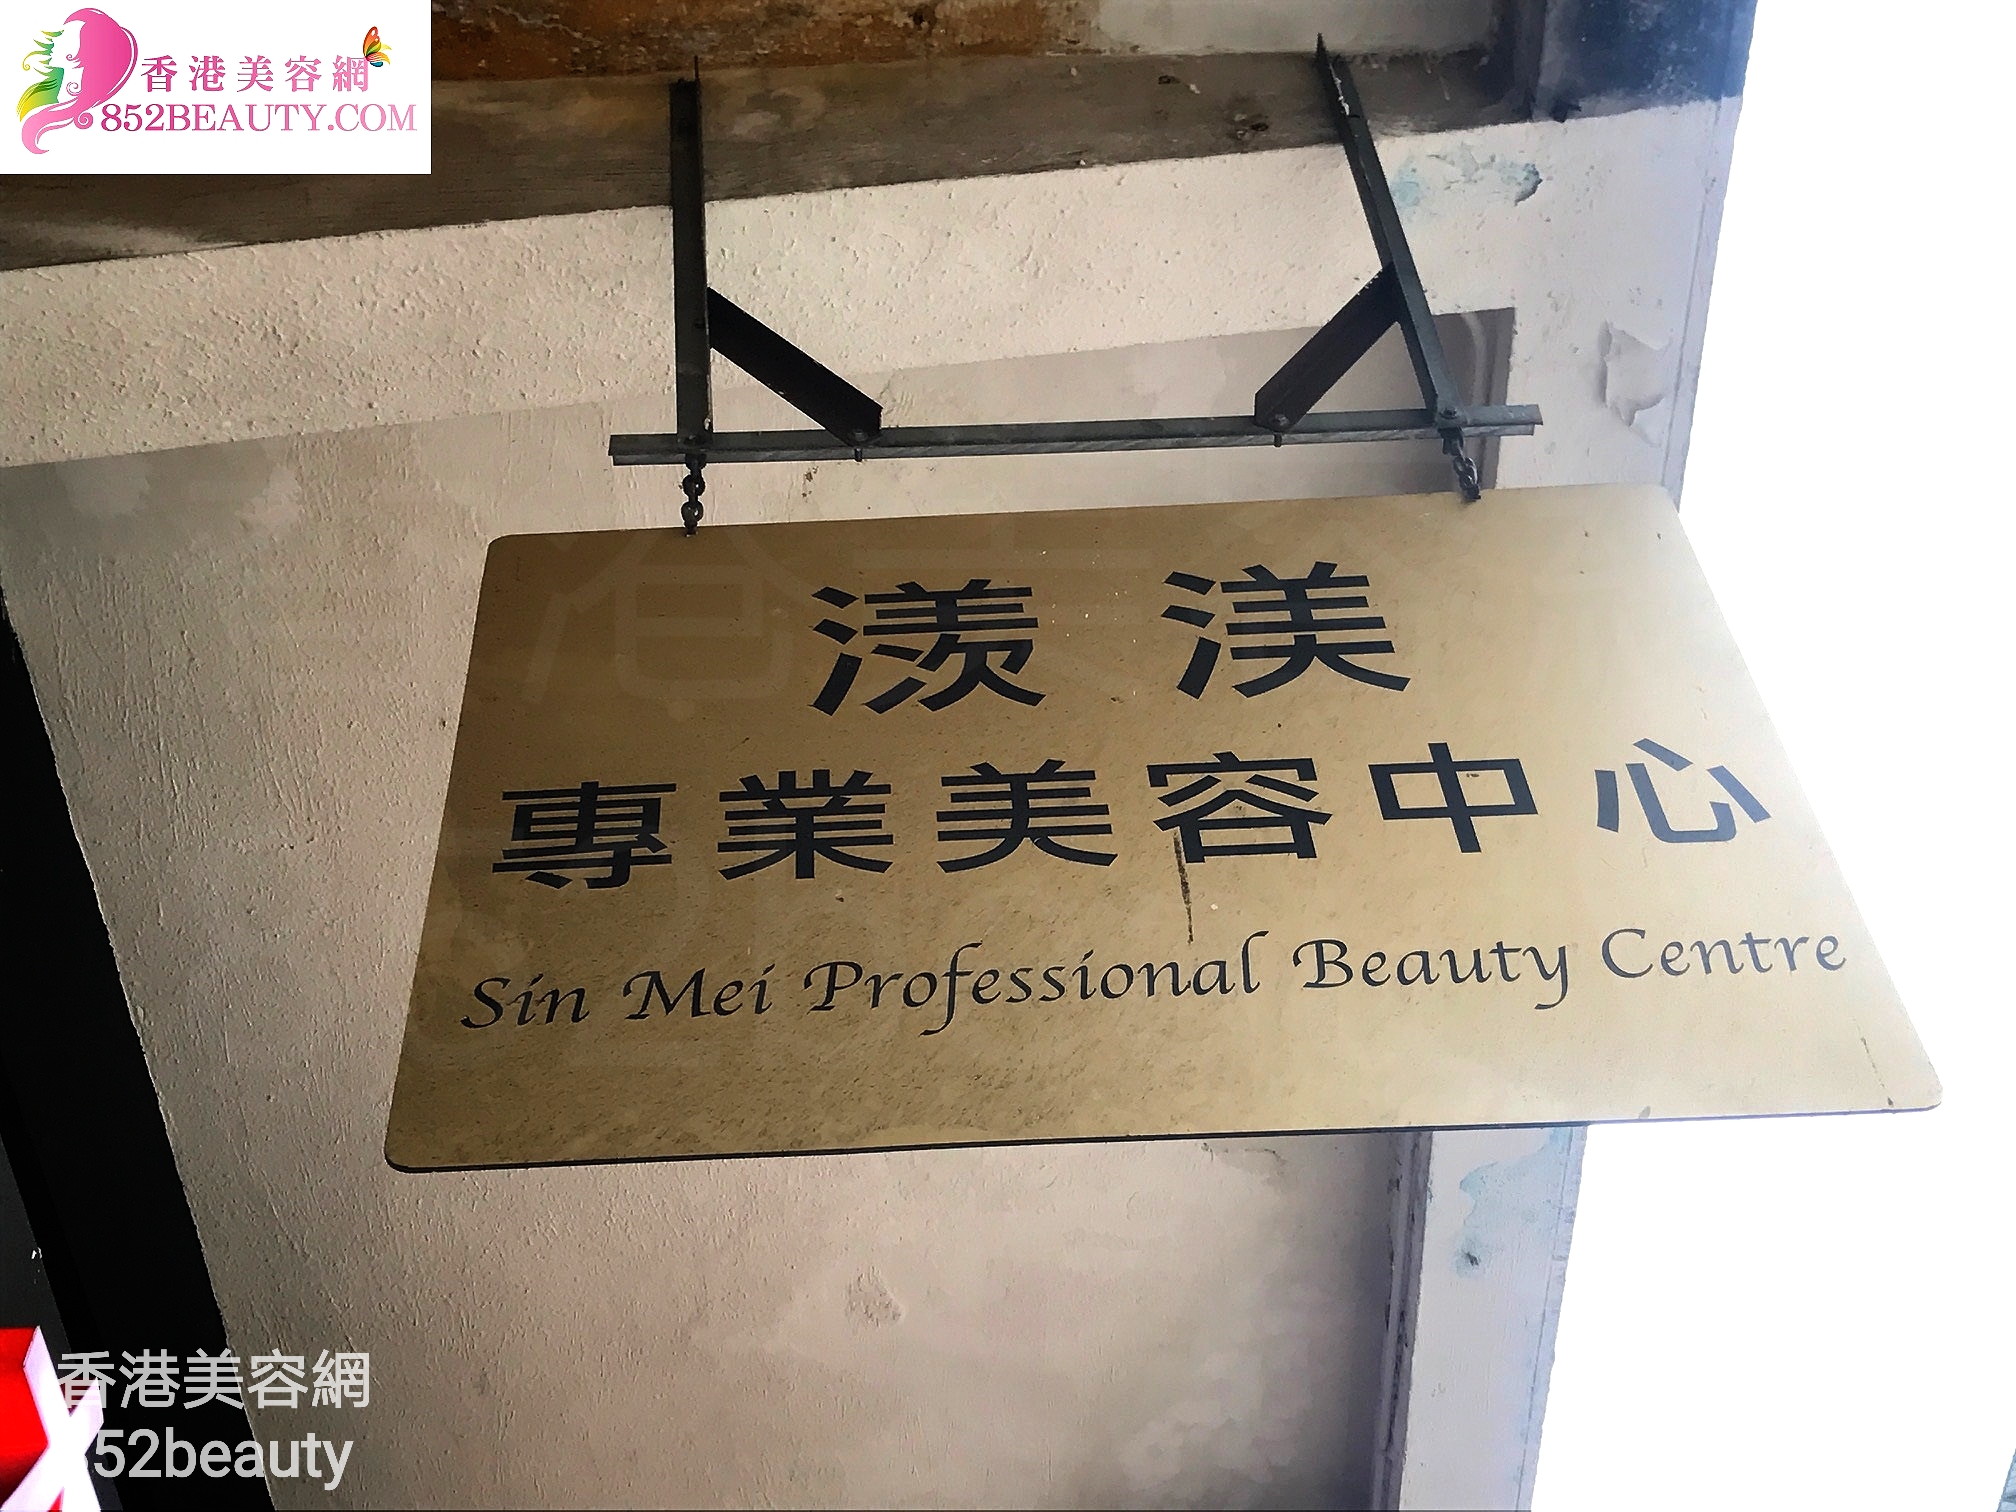 美容院 Beauty Salon: 㵪渼專業美容中心